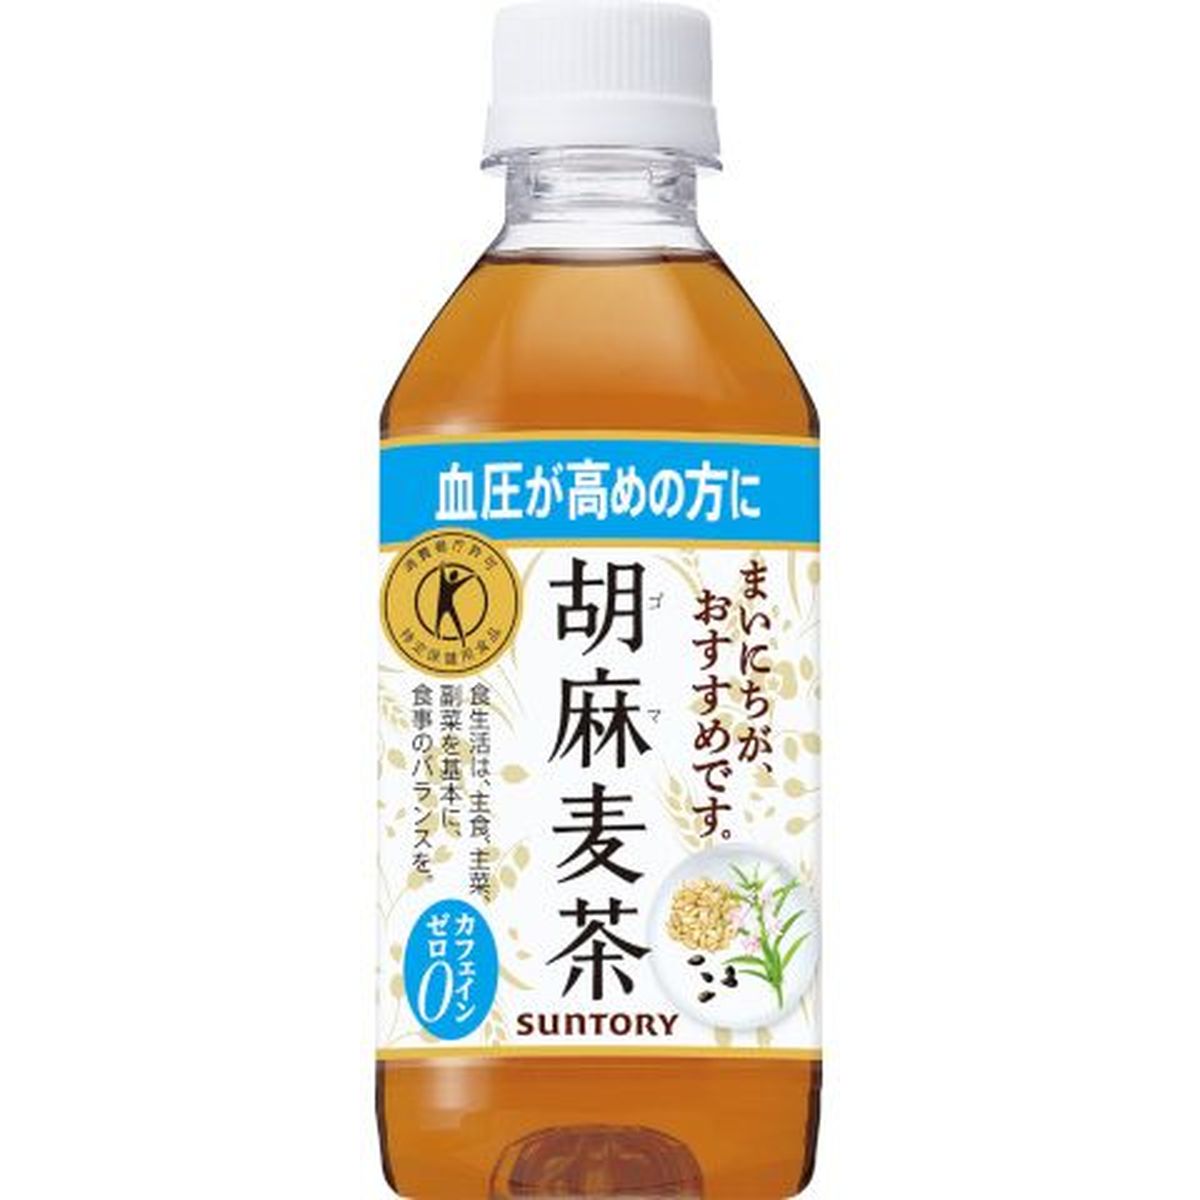 【24個入リ】サントリー 胡麻麦茶(手売リ用) ペット 350ml